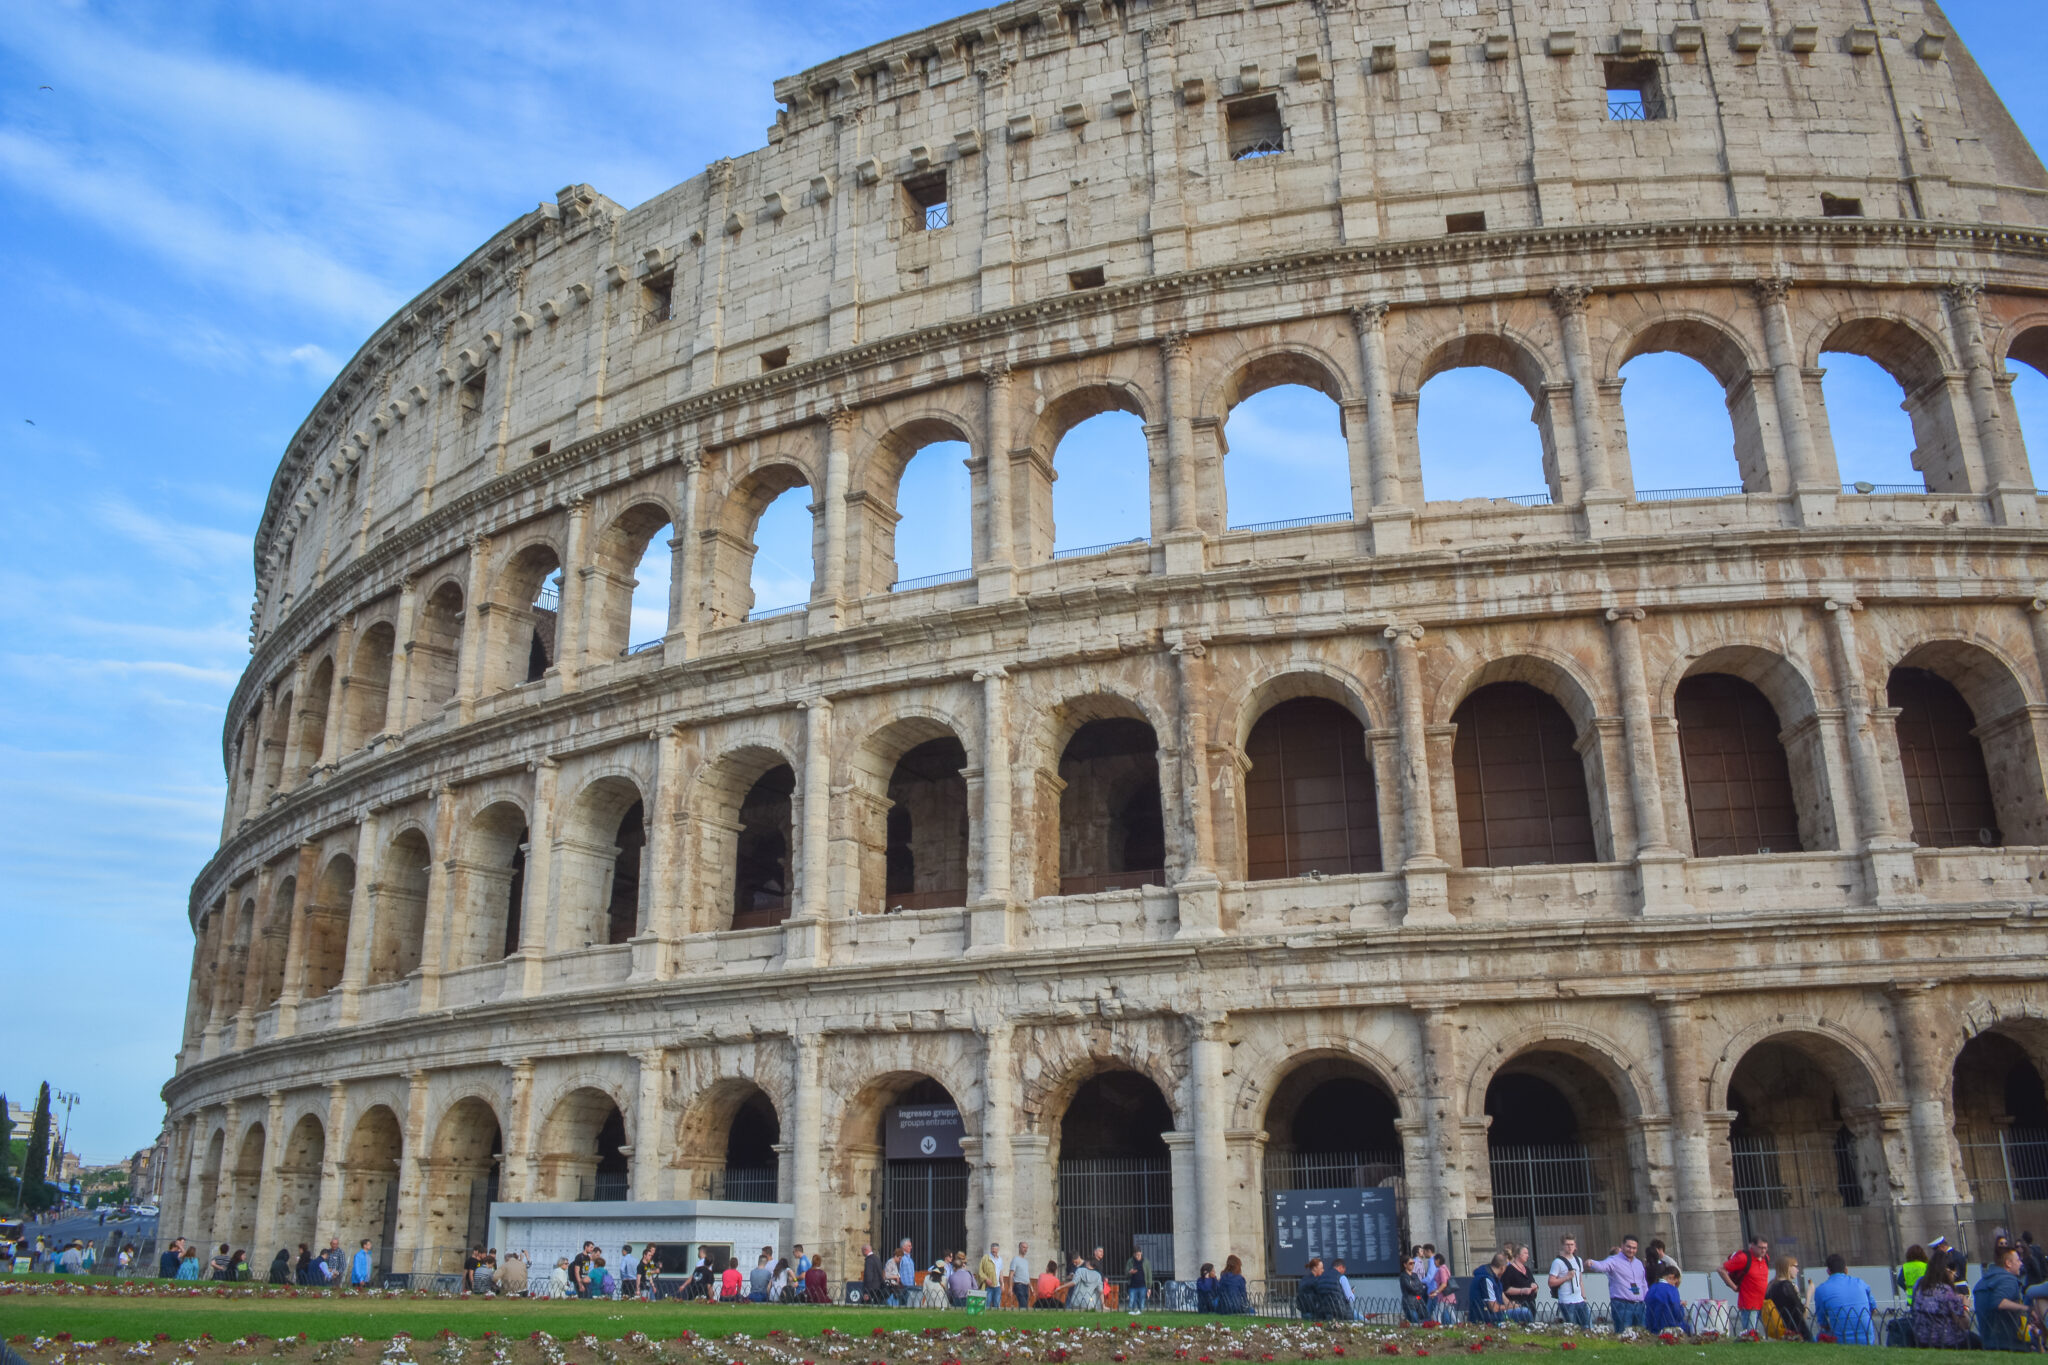 DSC 0907 2 scaled - Atrações gratuitas em Roma: 10 lugares para você conhecer